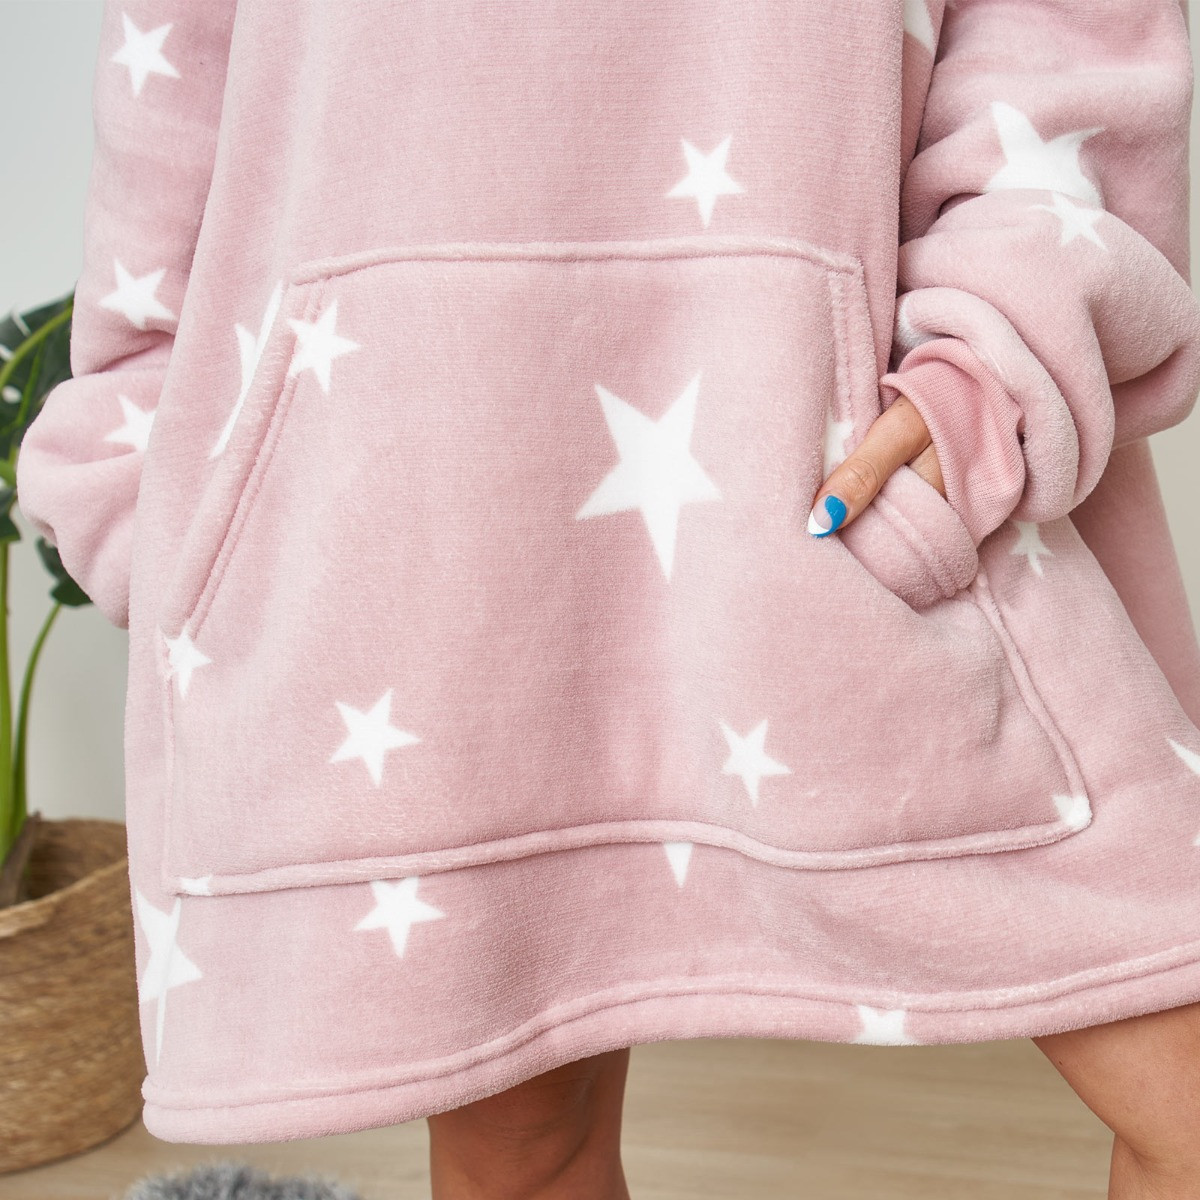 Dreamscene Star Print Hoodie Blanket, Adults - Blush Pink>